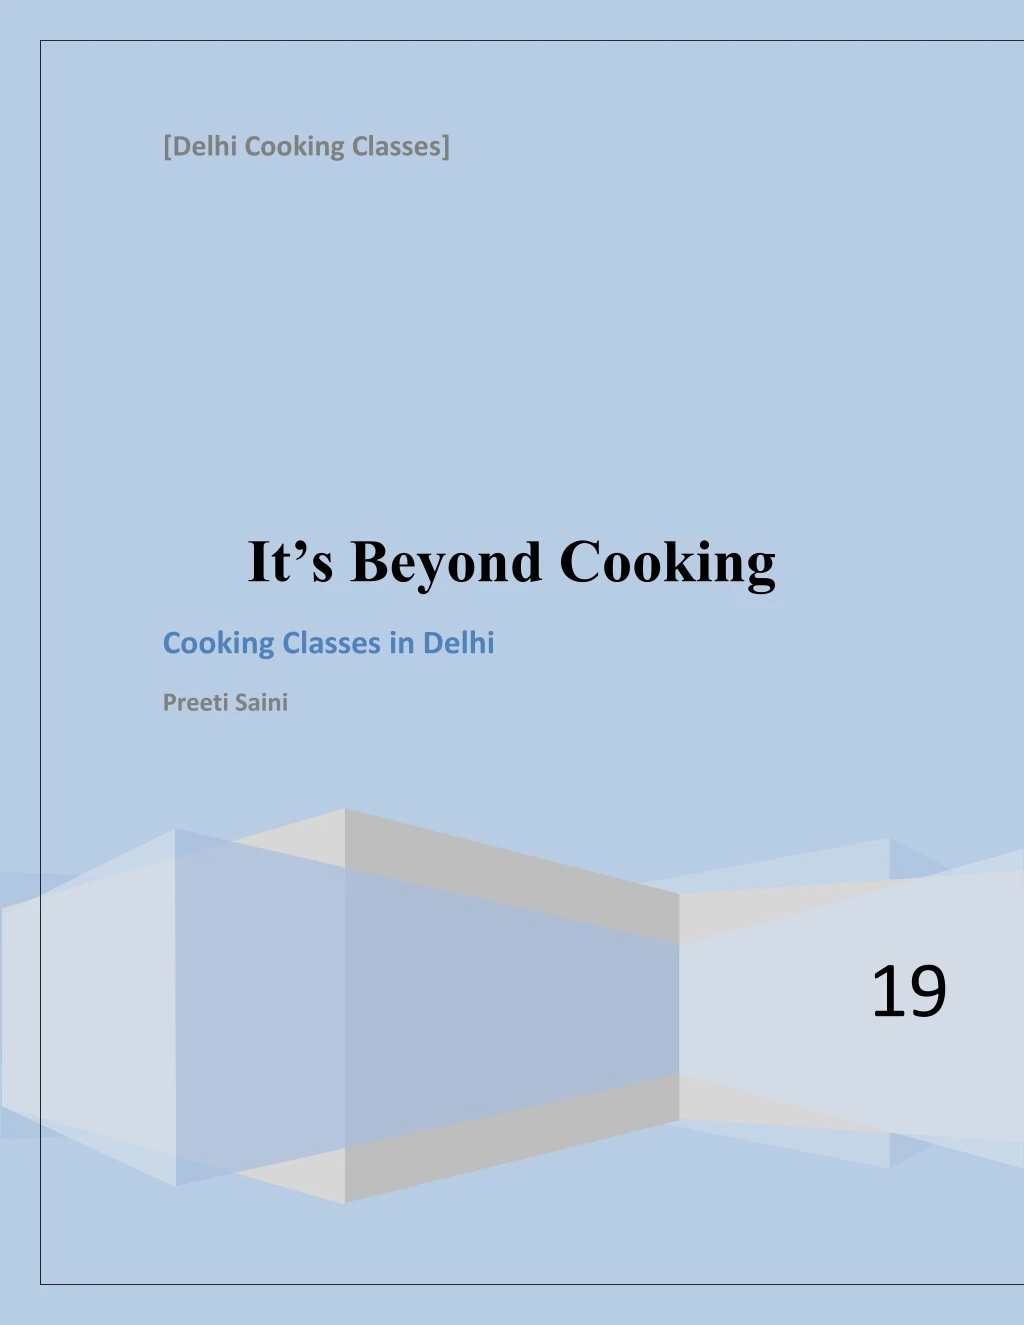 delhi cooking classes